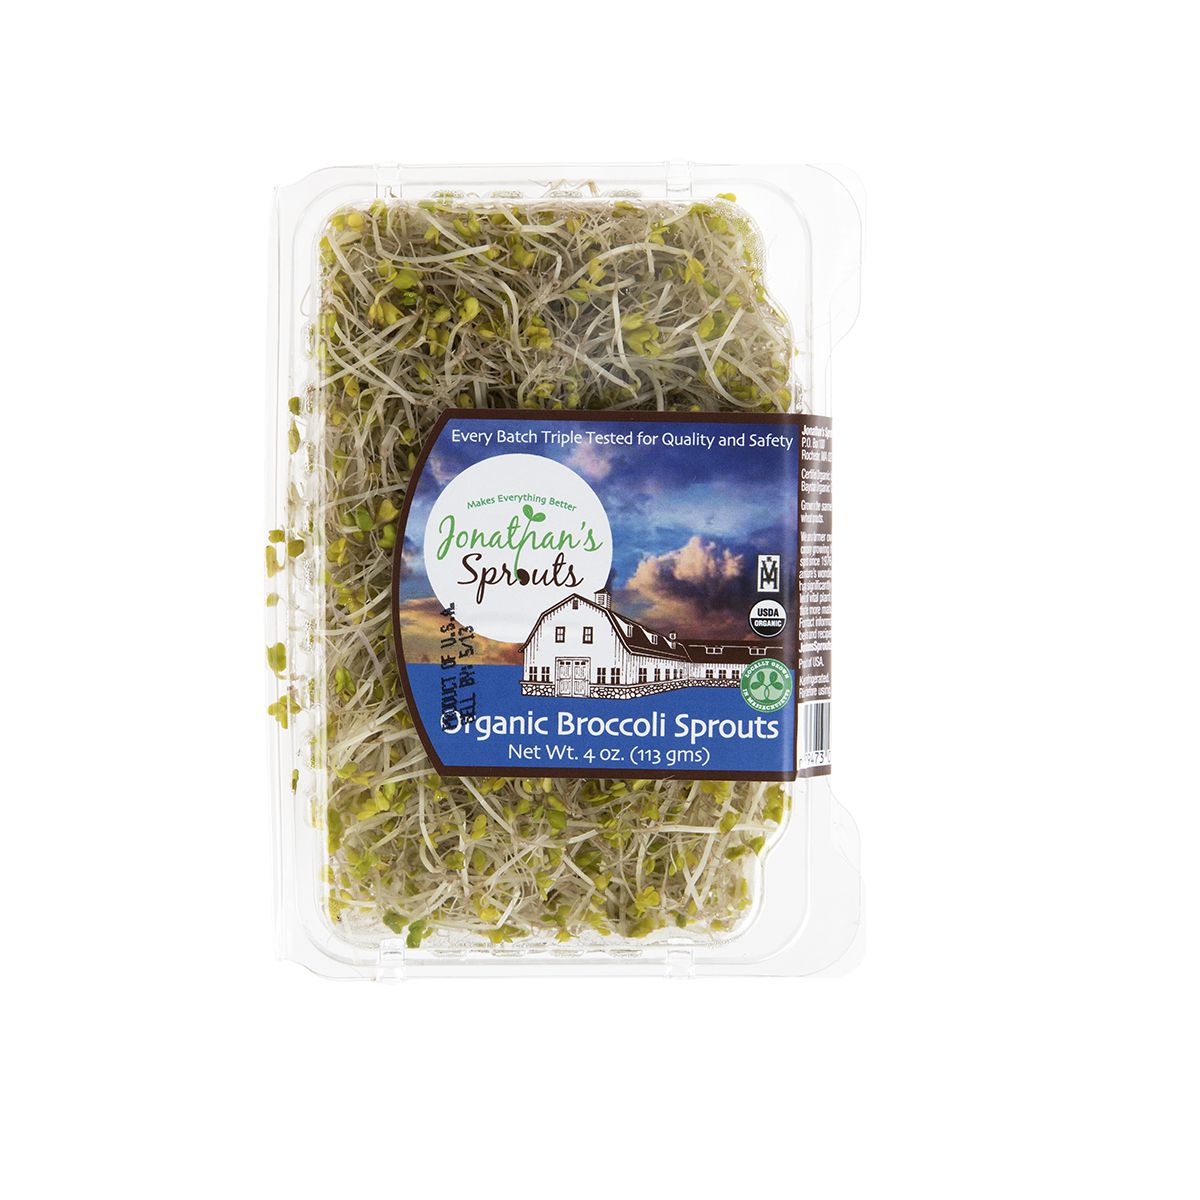 BoxNCase Organic Broccoli Sprouts 4 Oz Box